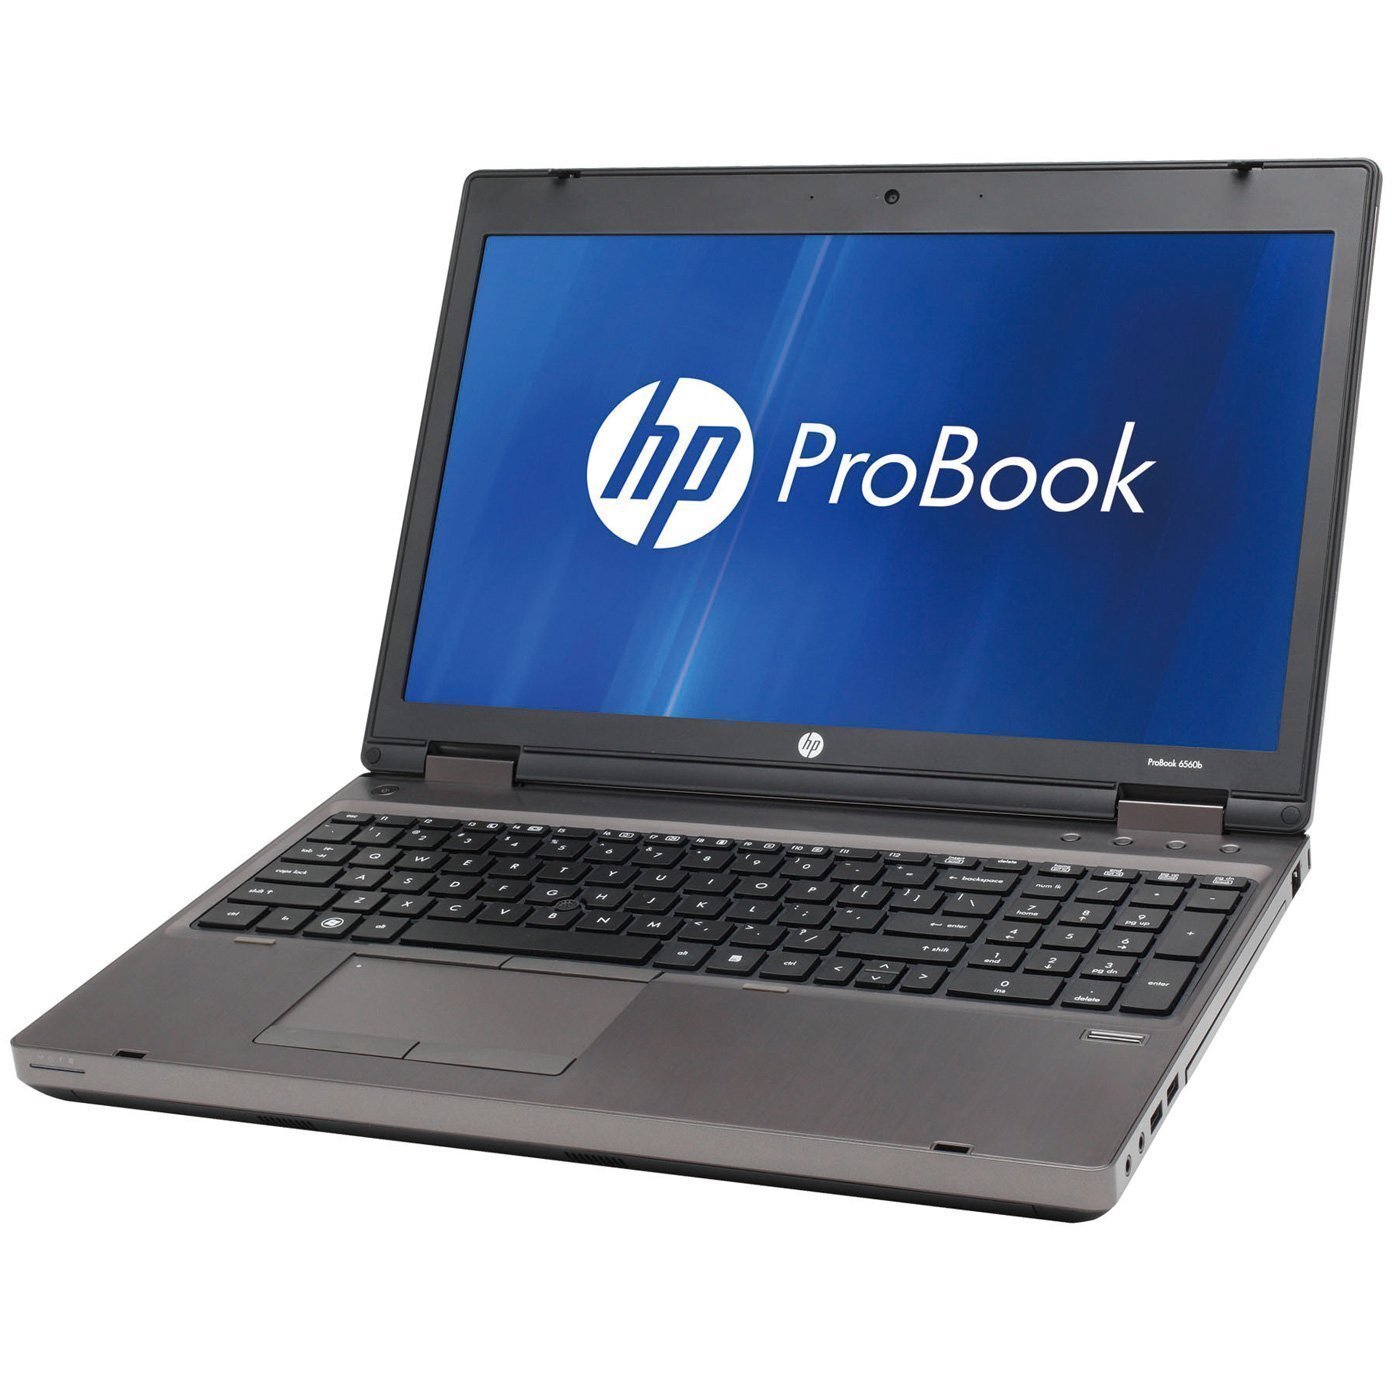 HP ProBook 6560b Intel i5 2450M 2.50GHz 4GB RAM 320GB HDD 15.6" NO OS Full Size Image